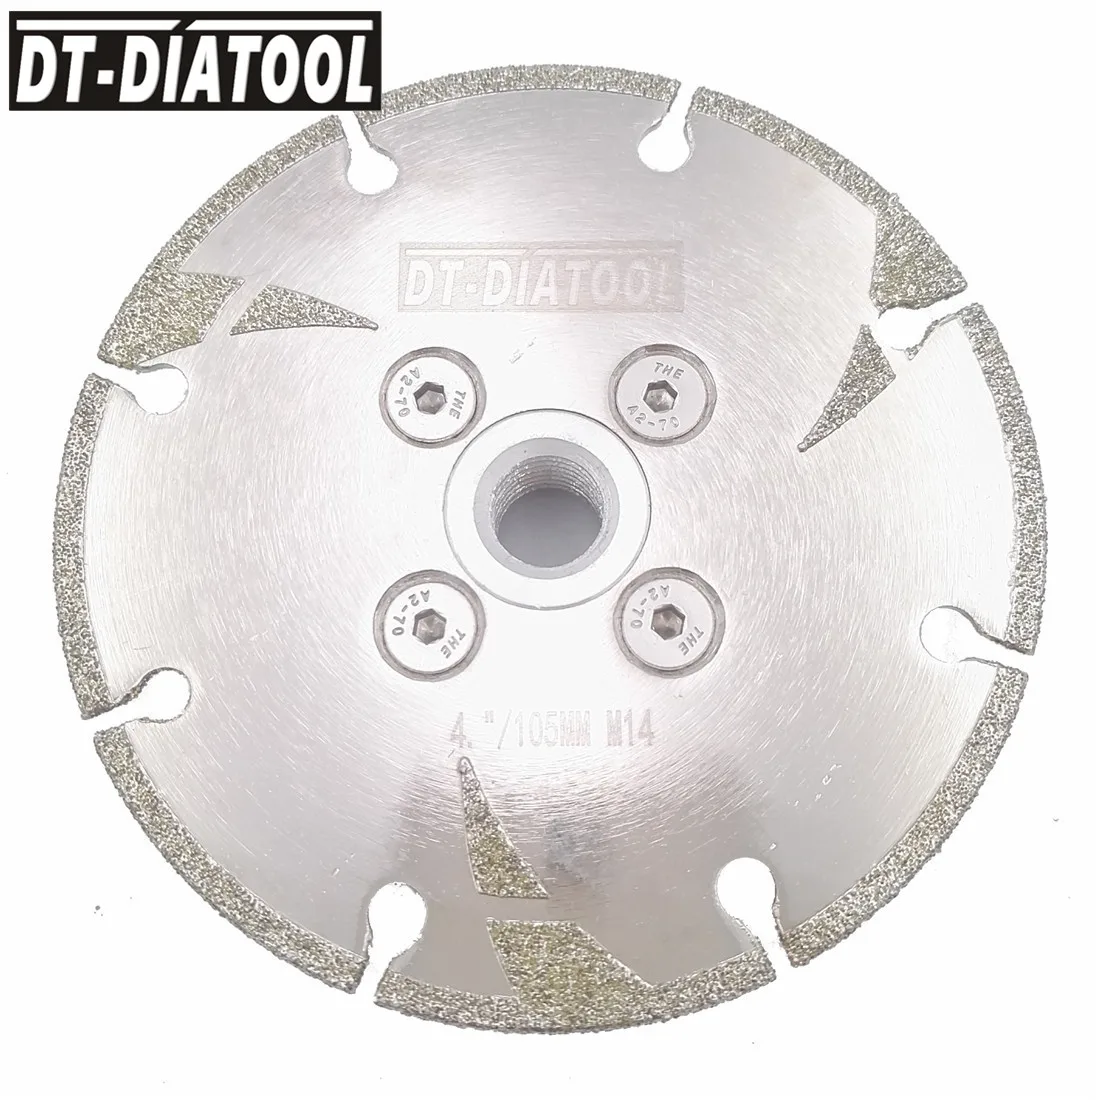 DT-DIATOOL 1 шт. 100 мм/115 мм/125 мм Гальванизированный усиленный алмазный режущий дисковый пильный диск M14 резьба диаметром " 4,5" " сухой или влажный